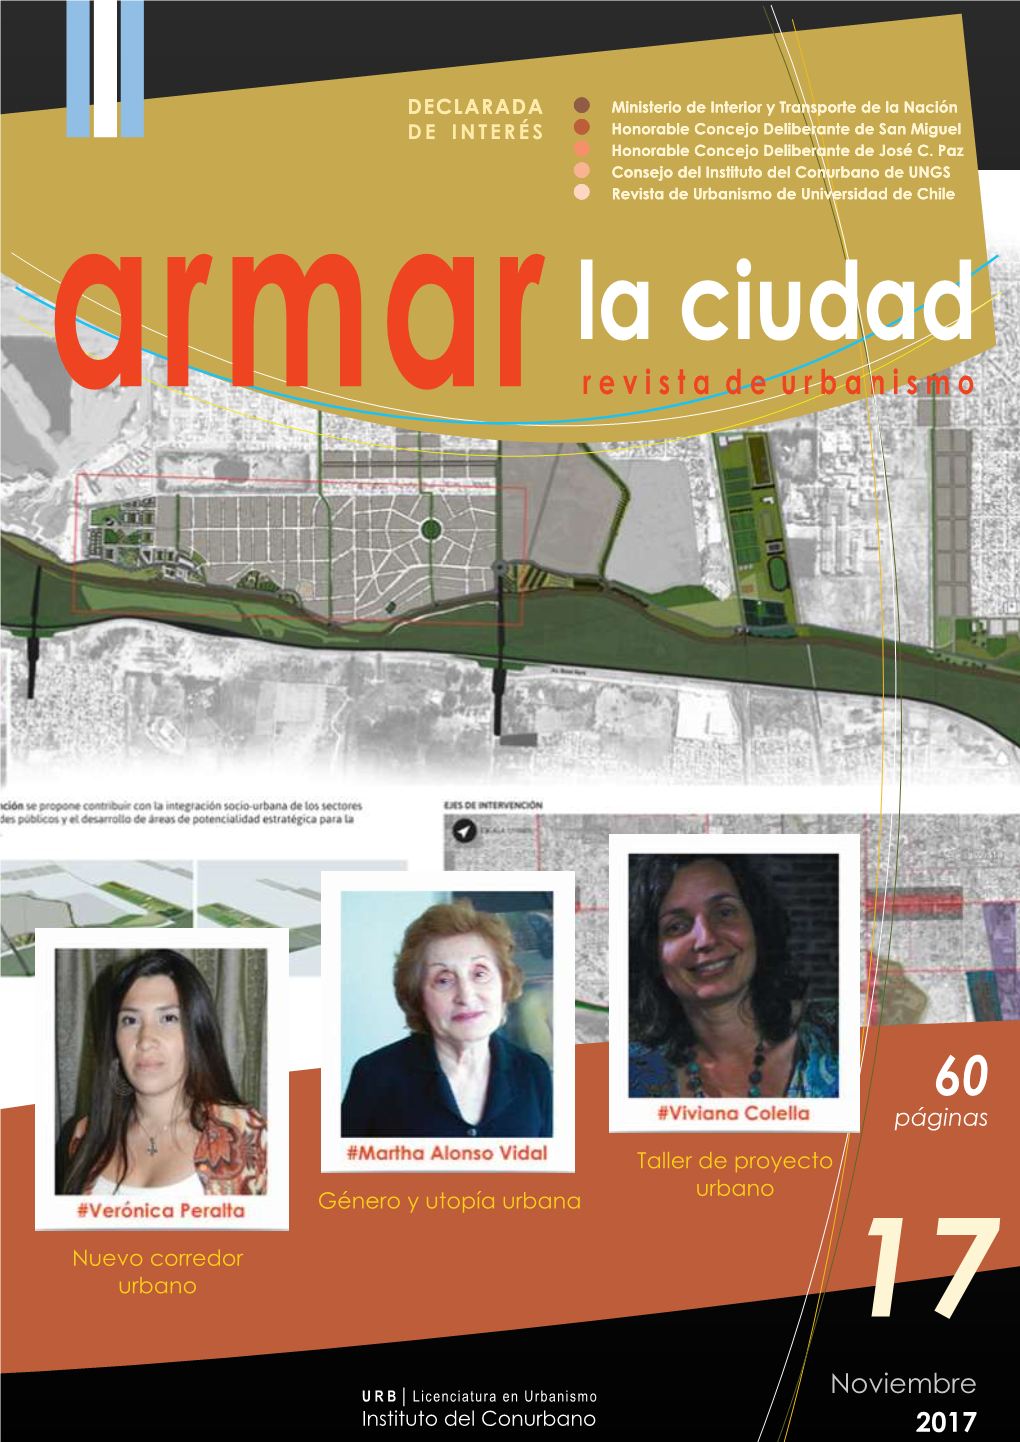 Revista Digital "Armar La Ciudad"